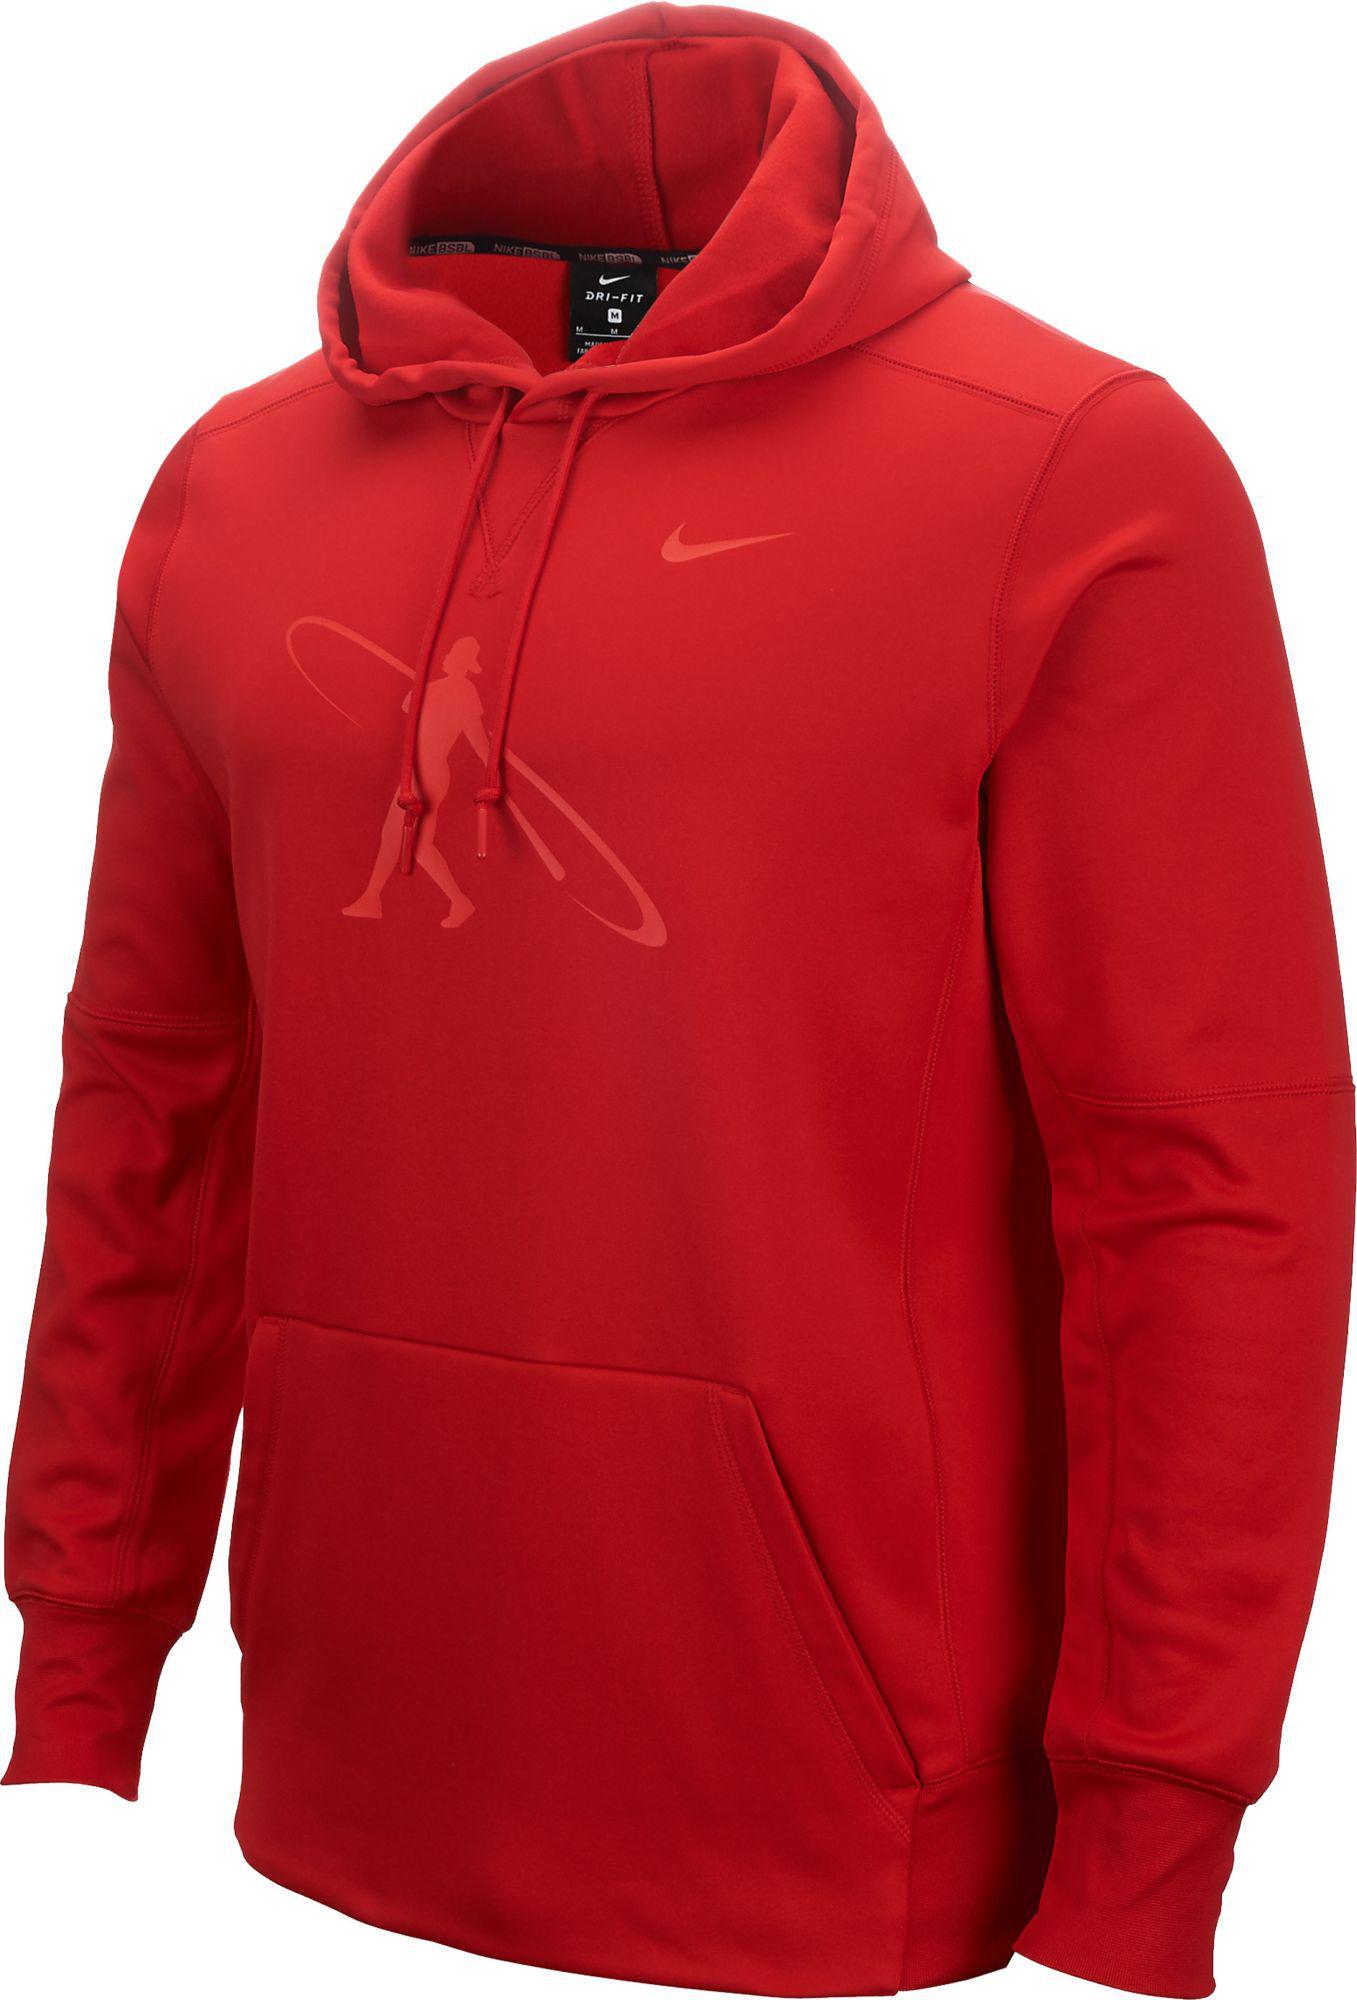 Lyst - Nike Swingman Baseball Hoodie in Red for Men